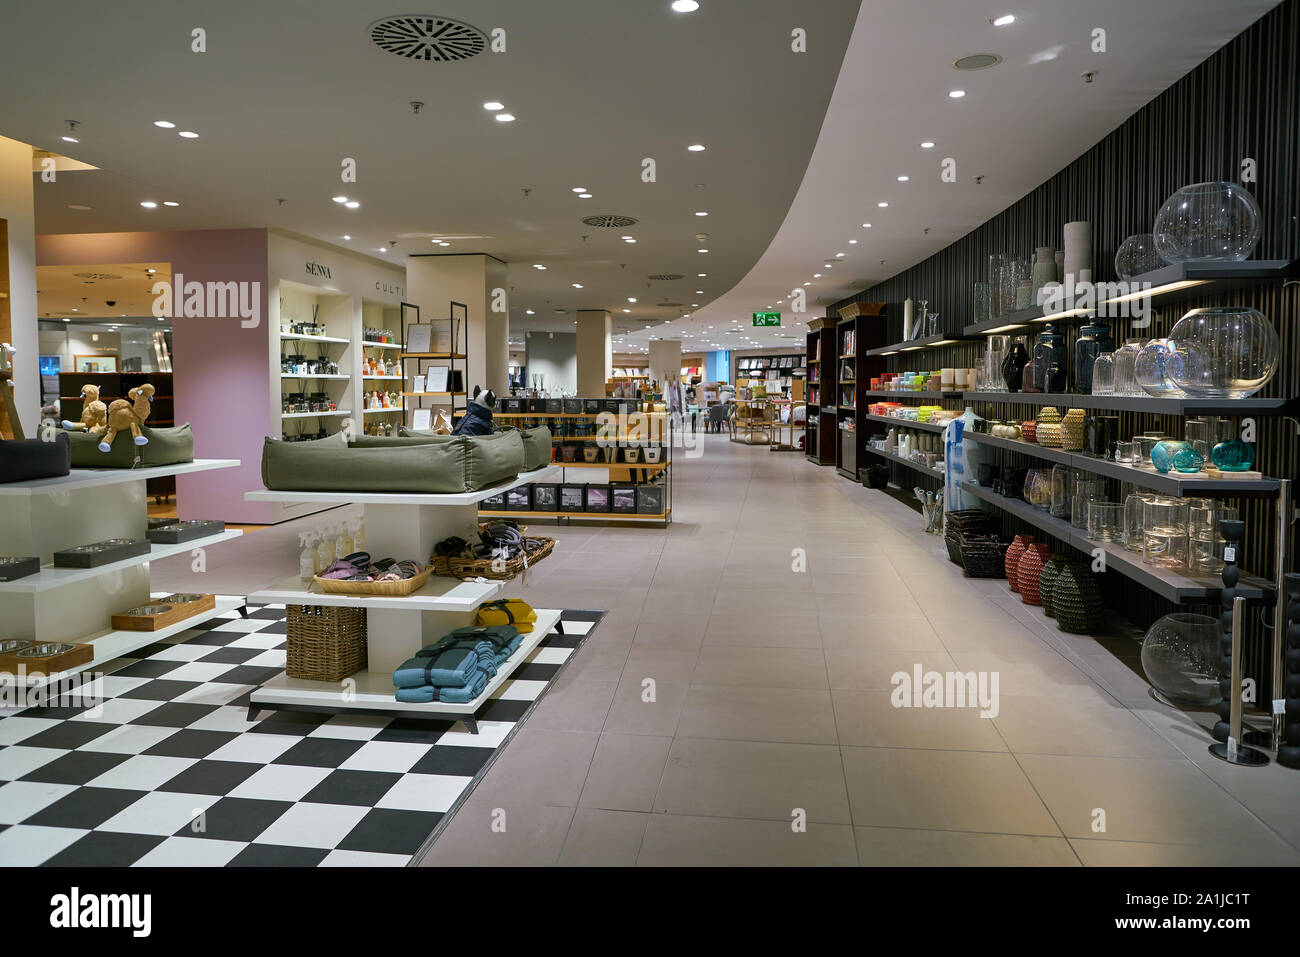 ZURICH, SWITZERLAND - CIRCA OCTOBER, 2018: interior shot of Jelmoli department store in Zurich. Stock Photo